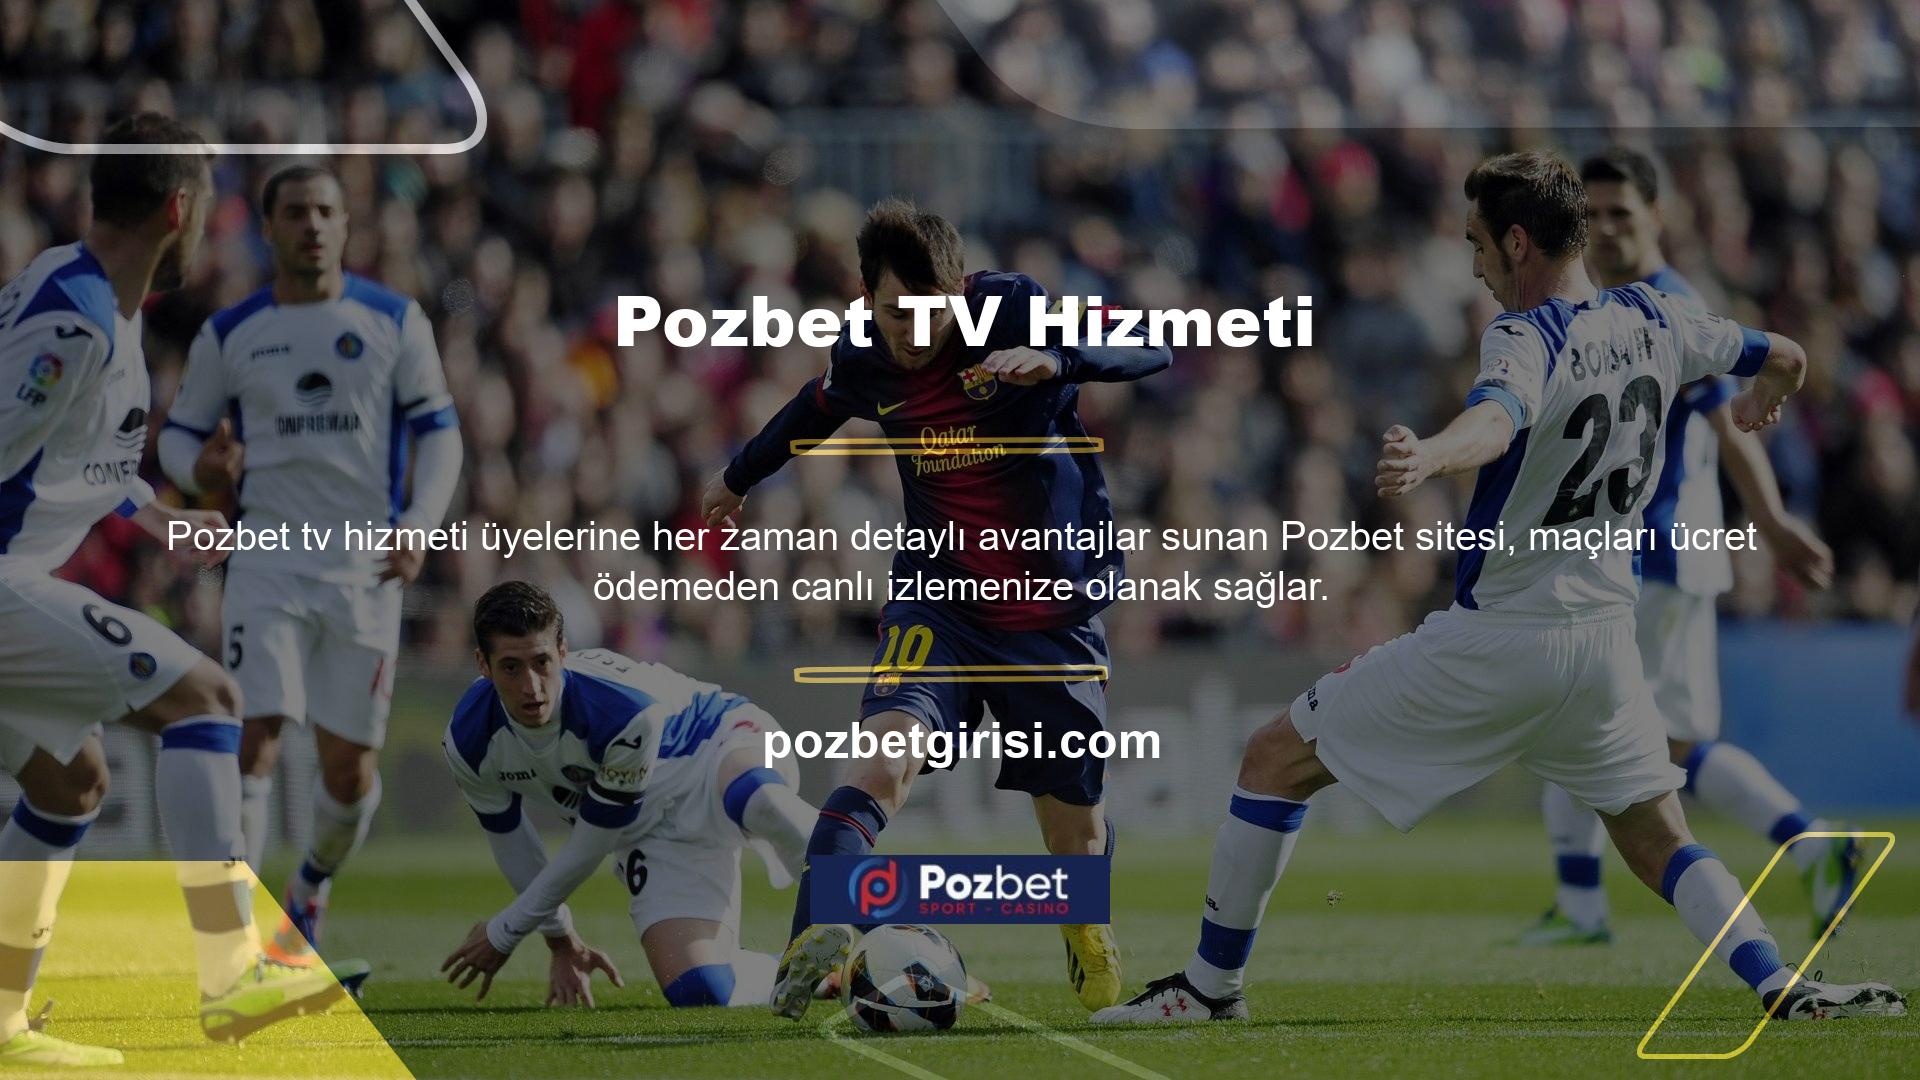 Pozbet TV hizmeti futboldan basketbola, voleyboldan Amerikan futboluna kadar hemen hemen her maçın duyuru ve yayınını yapmaktadır